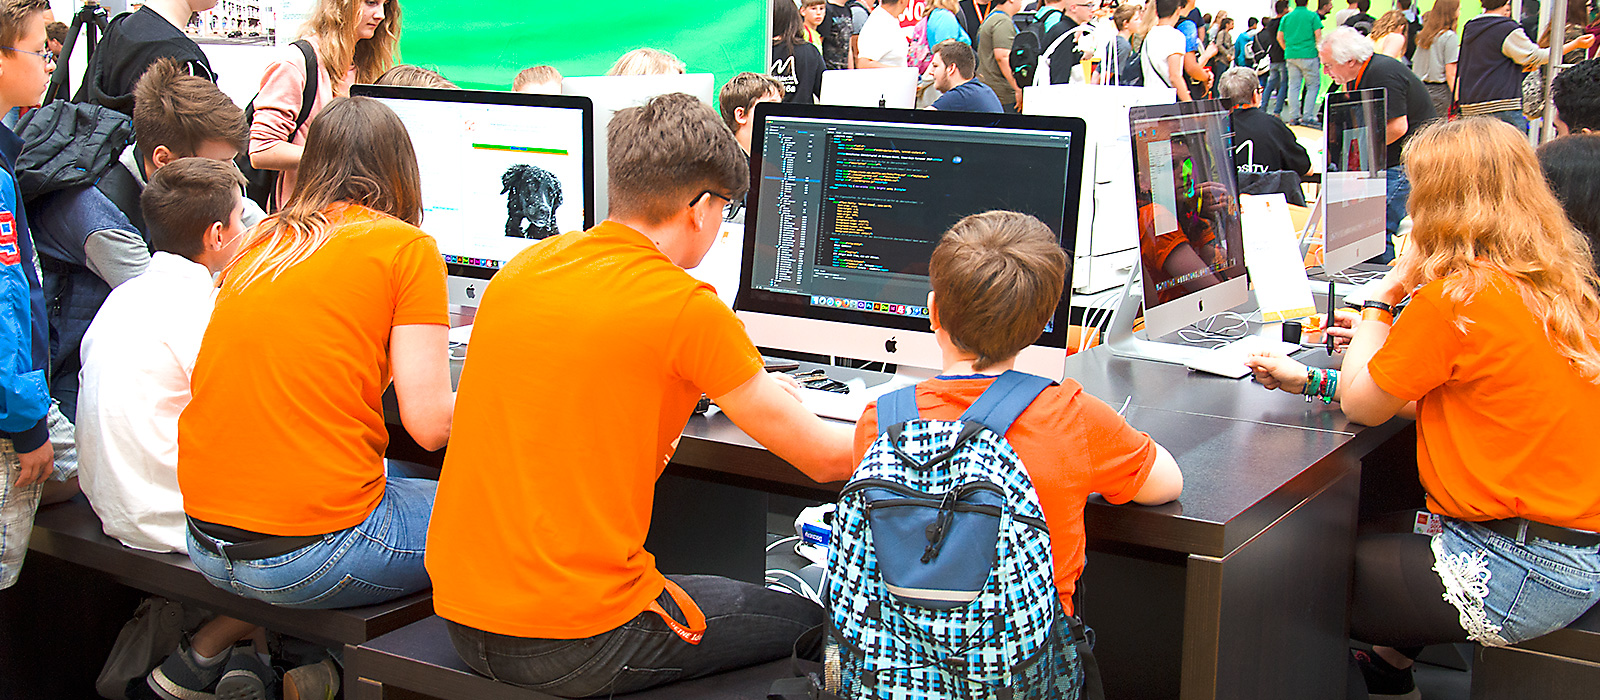 Schüler der Dr. Buhmann Schule & Akademie zeigen jungen Besuchern kreative Arbeit am Rechner.